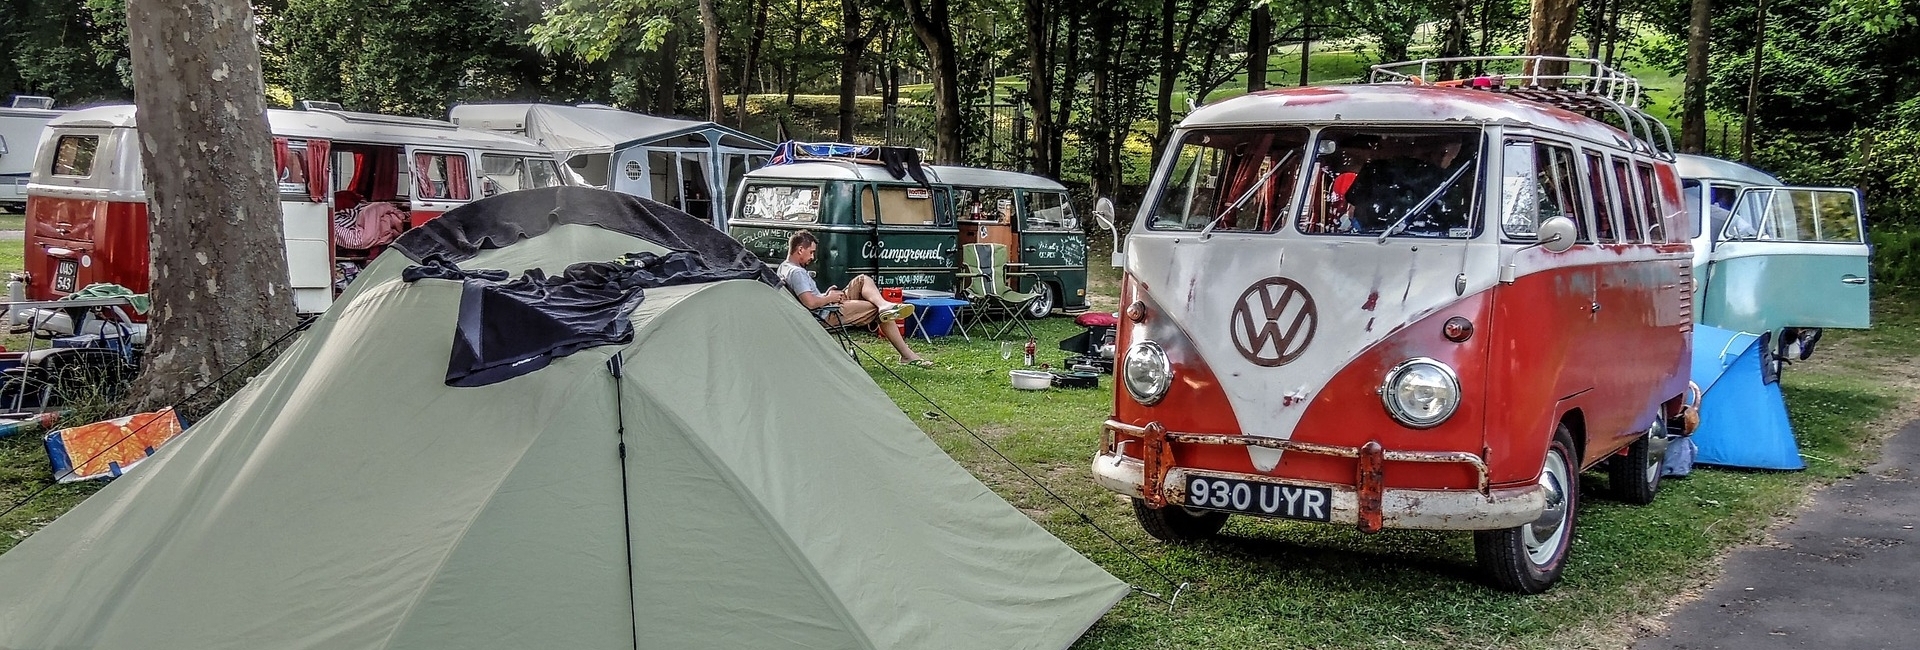 camping-kamperen-voortent-caravan-001